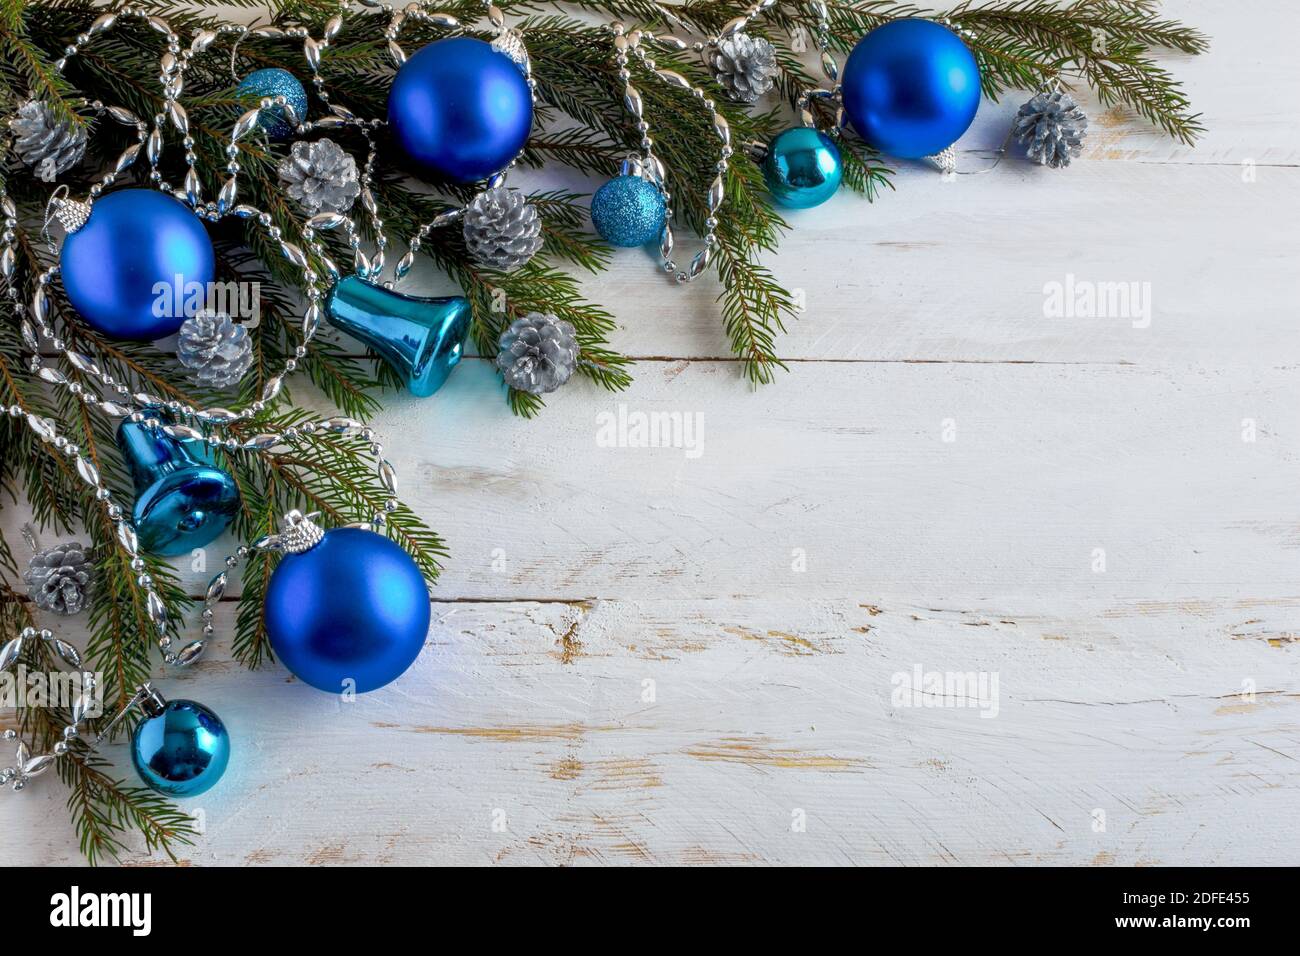 Décoration de Noël boules bleues, branches de sapin, de l'argent des pommes de pins, des cloches sur un fond en bois blanc, copy space Banque D'Images